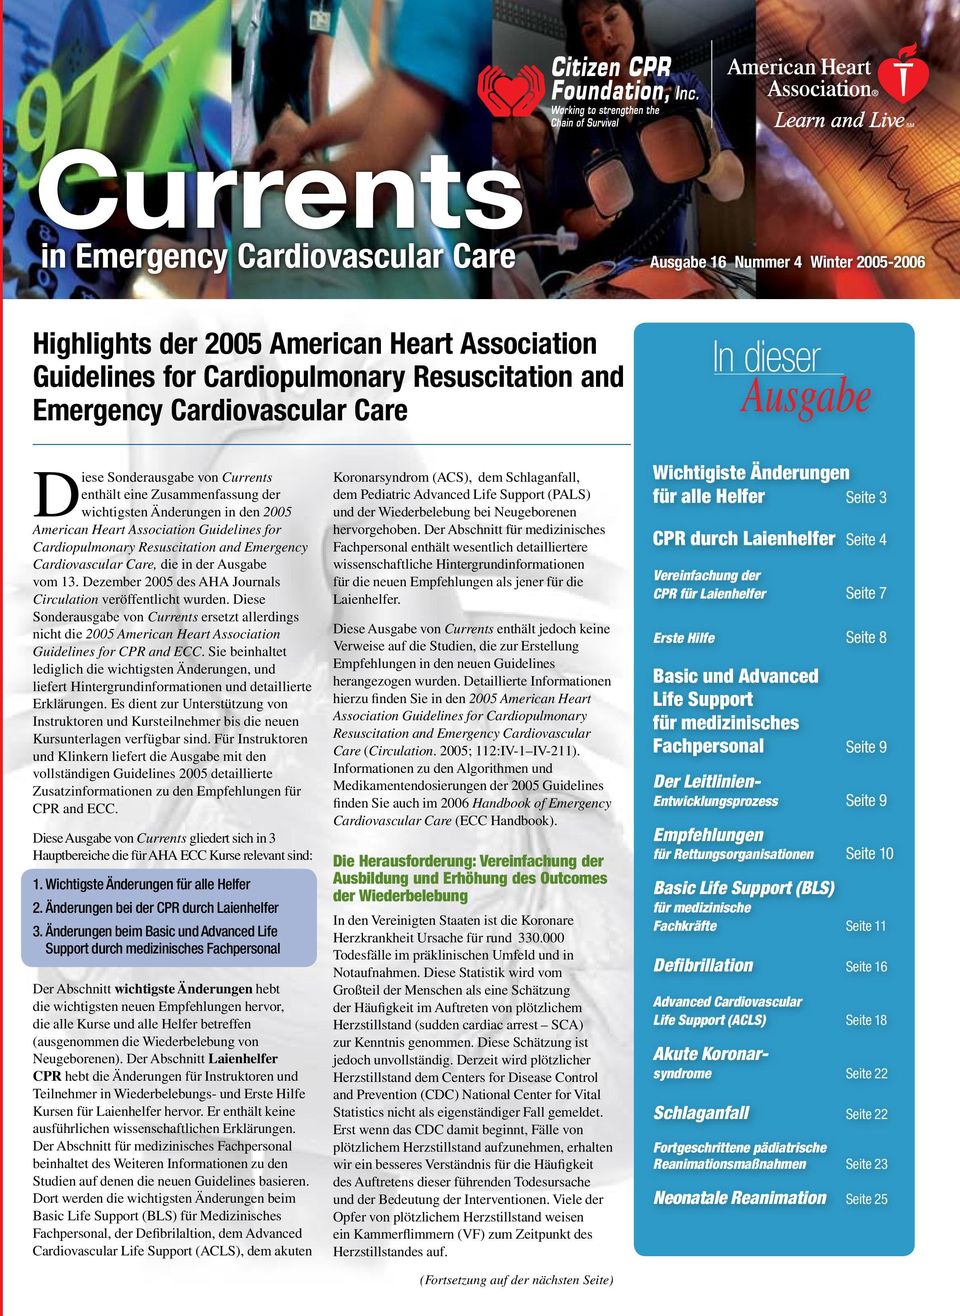 Emergency Cardiovascular Care, die in der Ausgabe vom 13. Dezember 2005 des AHA Journals Circulation veröffentlicht wurden.